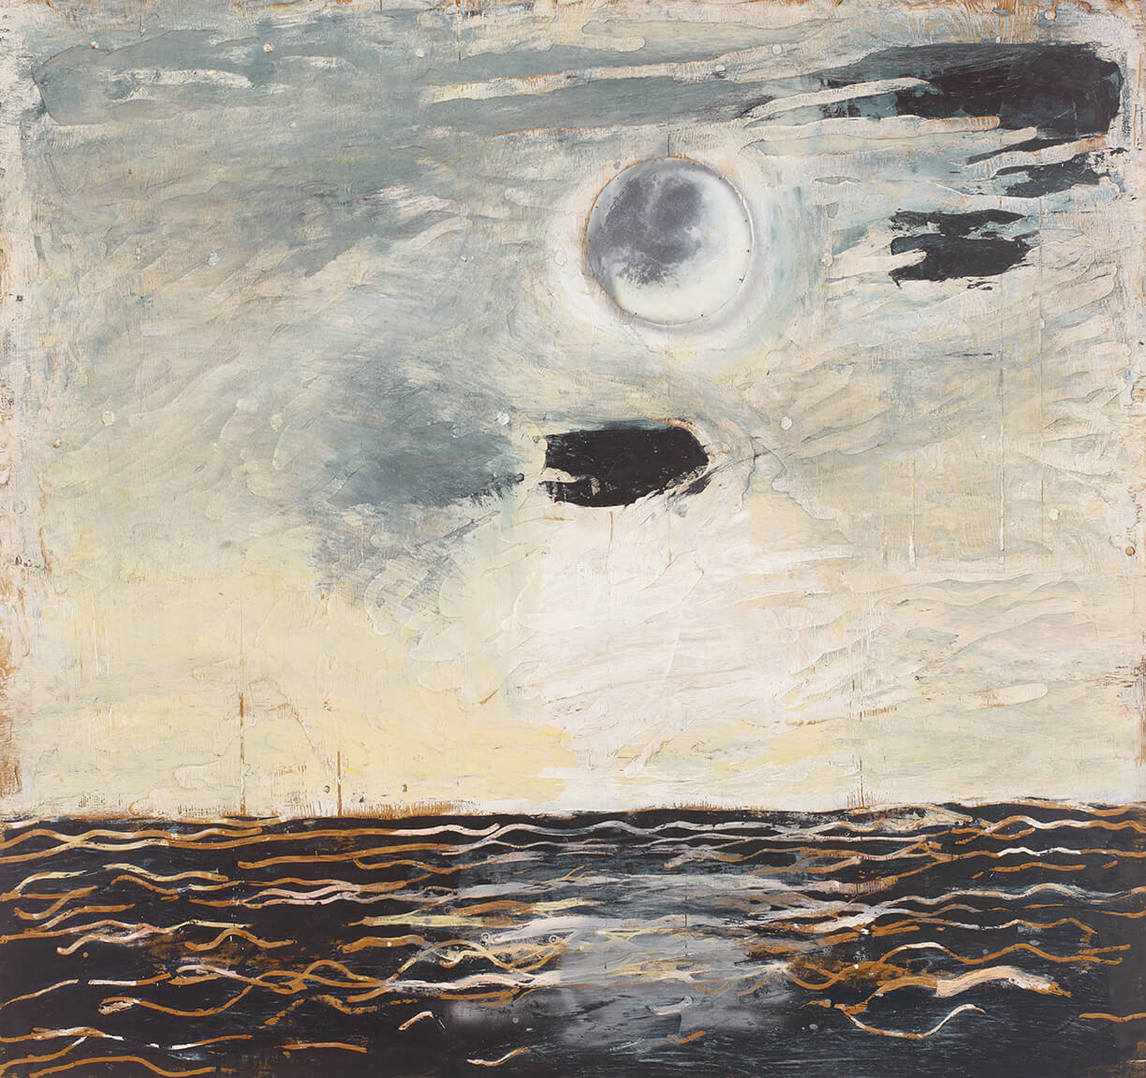 Paterson Ewen, Moon over Water (Lune au-dessus de l’eau), 1977